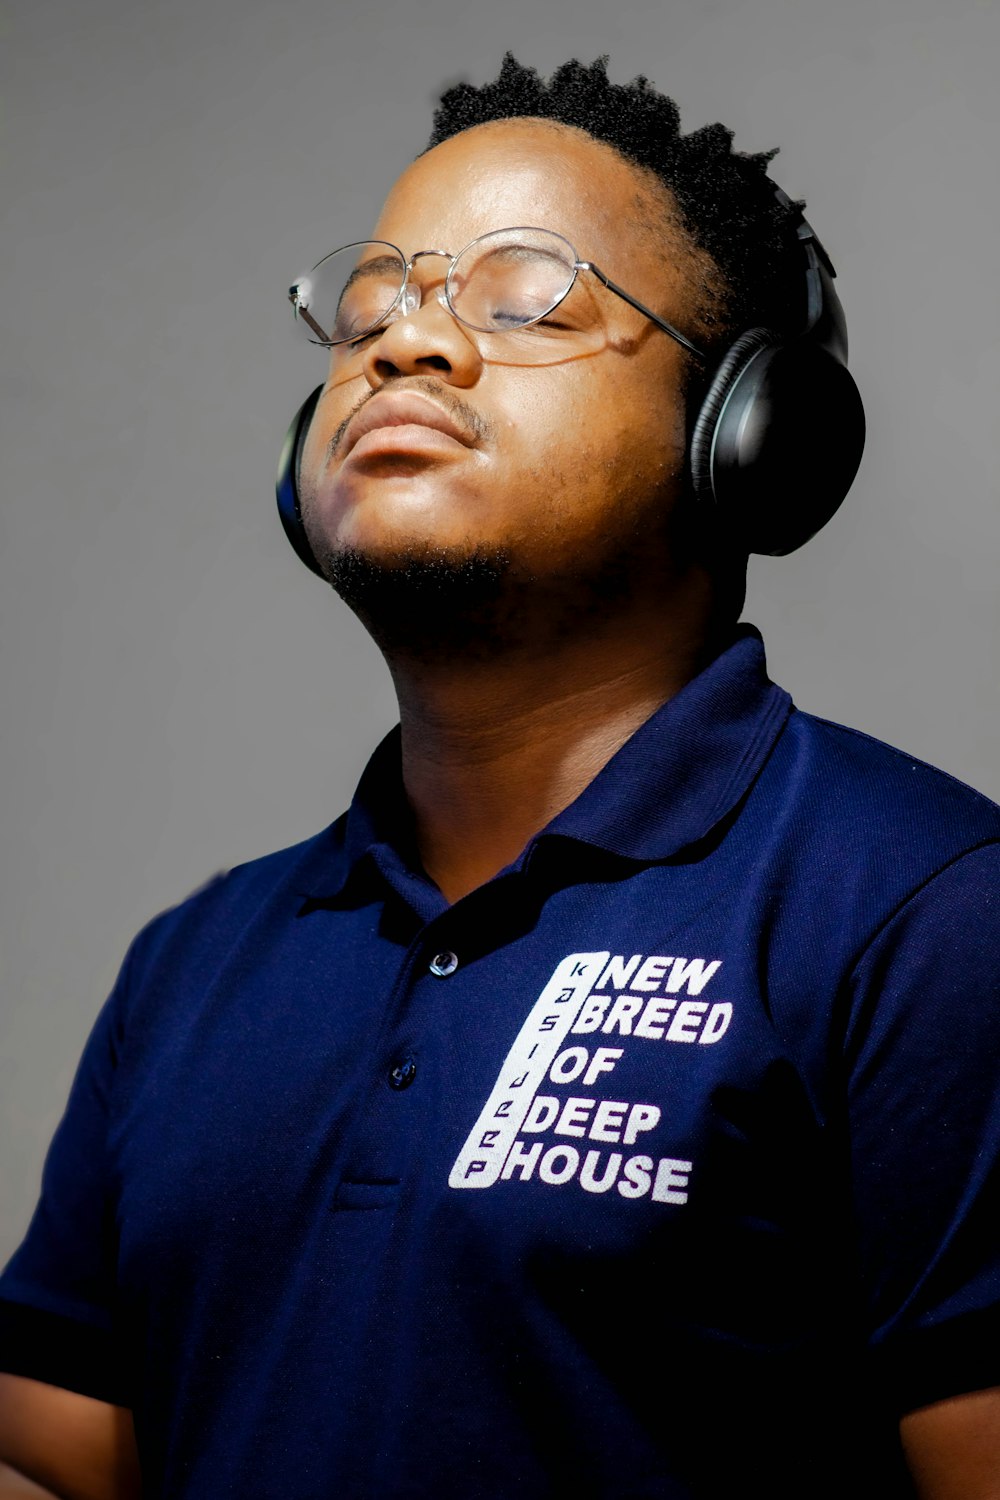 a man wearing headphones and a blue shirt